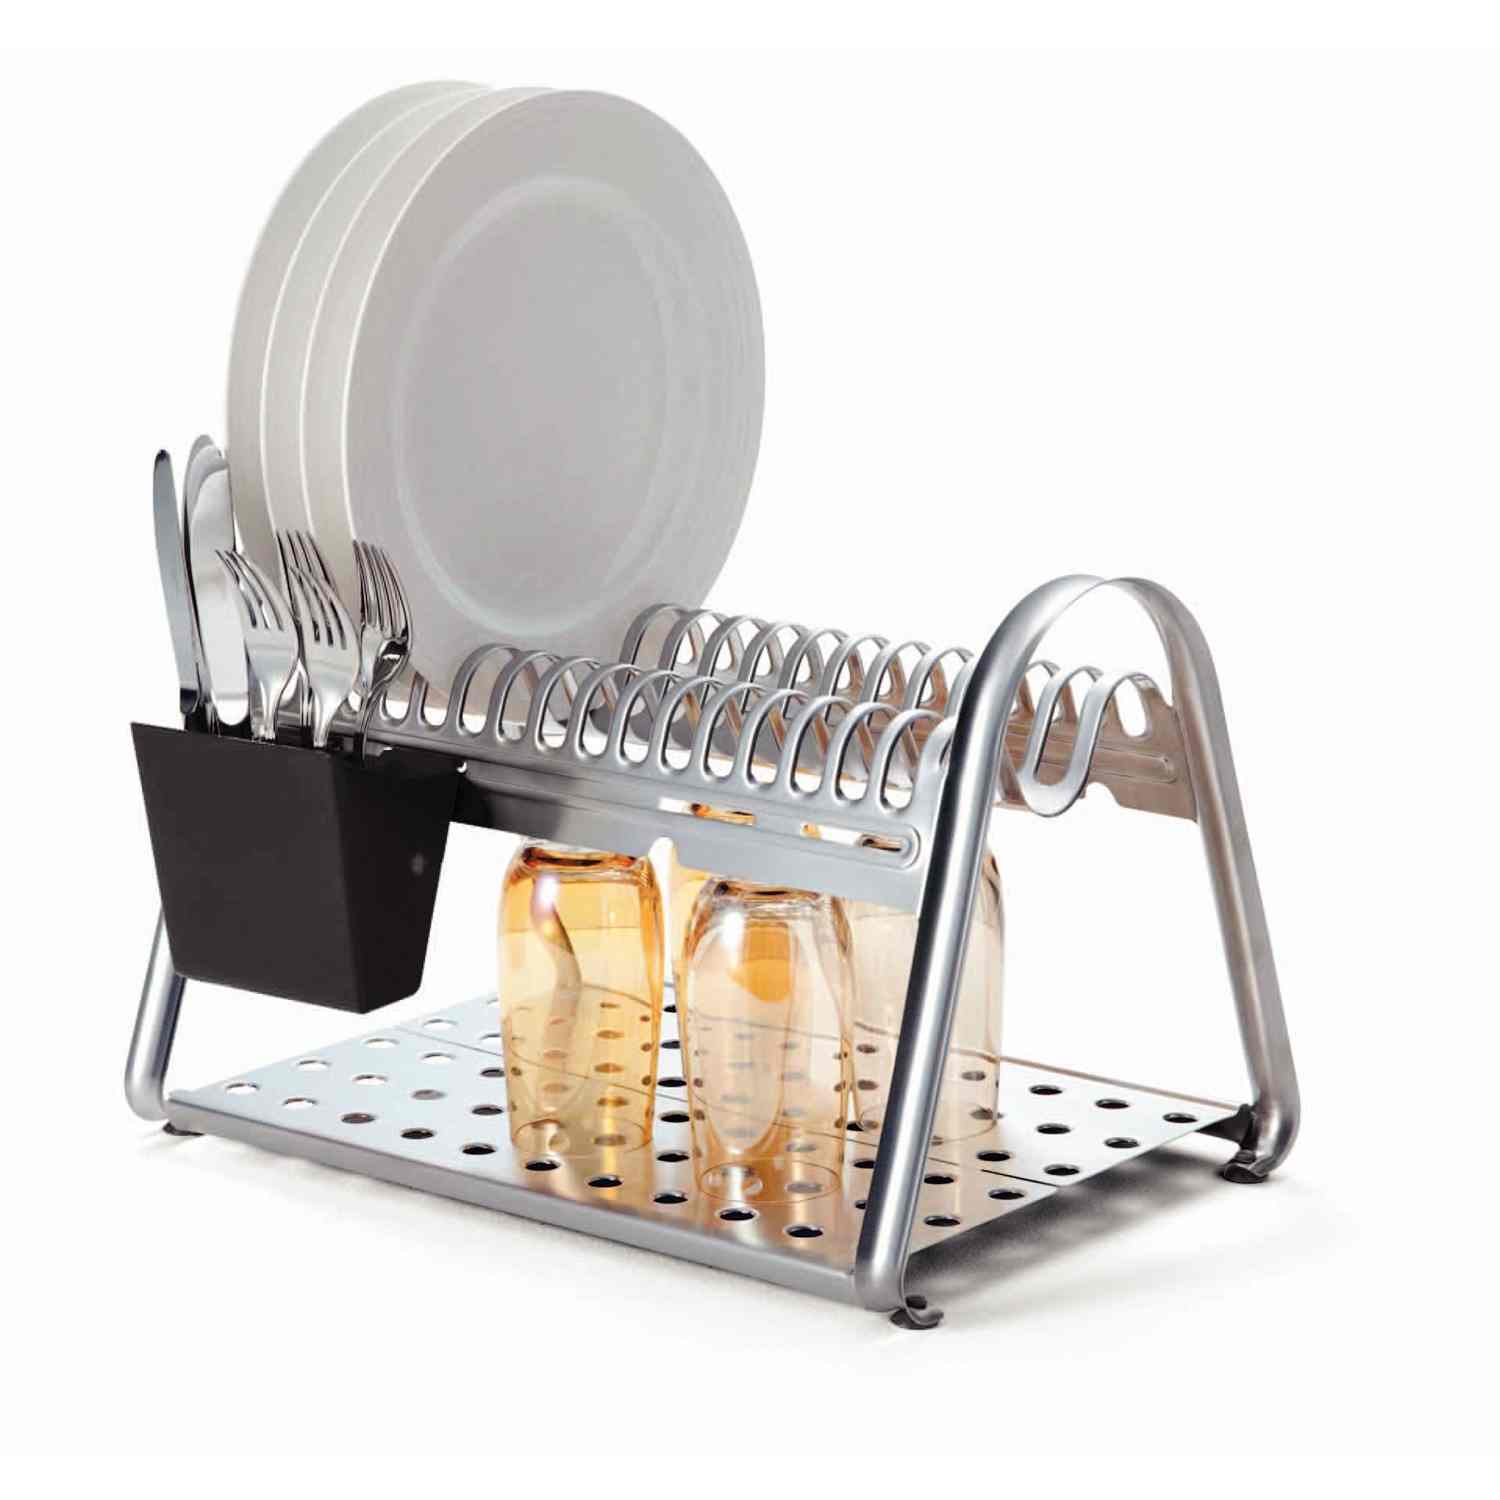 Escurridor de platos y vasos para muebles de cocina 70 cm. Incluye ban